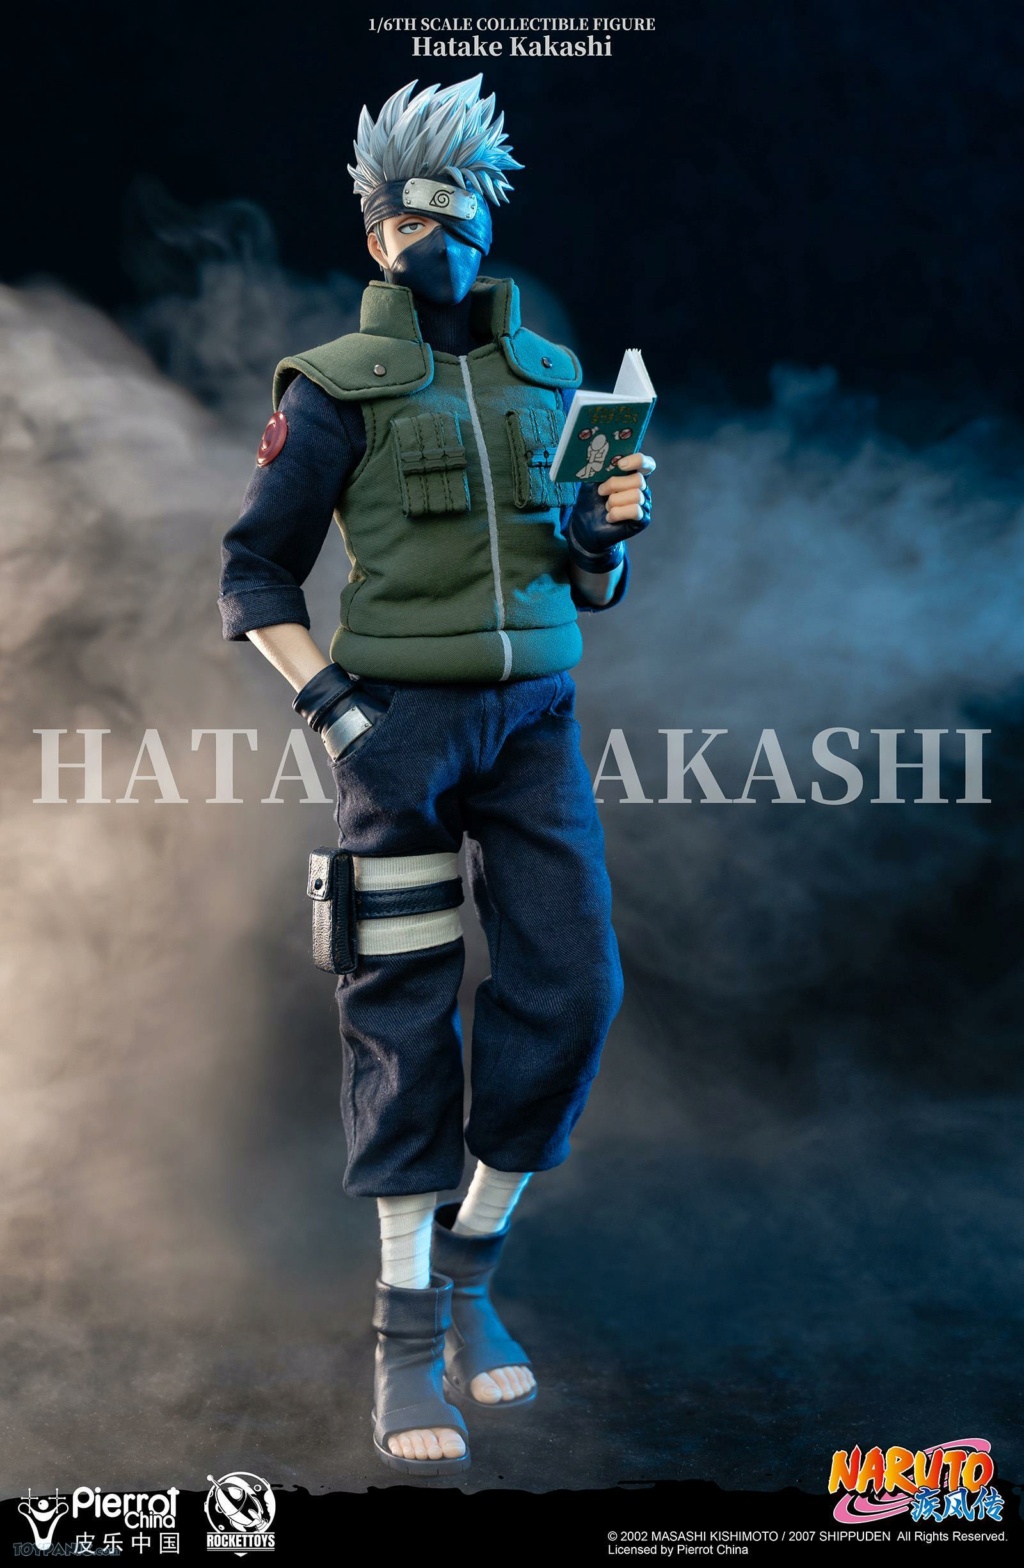 HatakeKakashi - NEW PRODUCT: ROCKET TOYS: (ROC-004) 1/6 Scale Hatake Kakashi 12420214